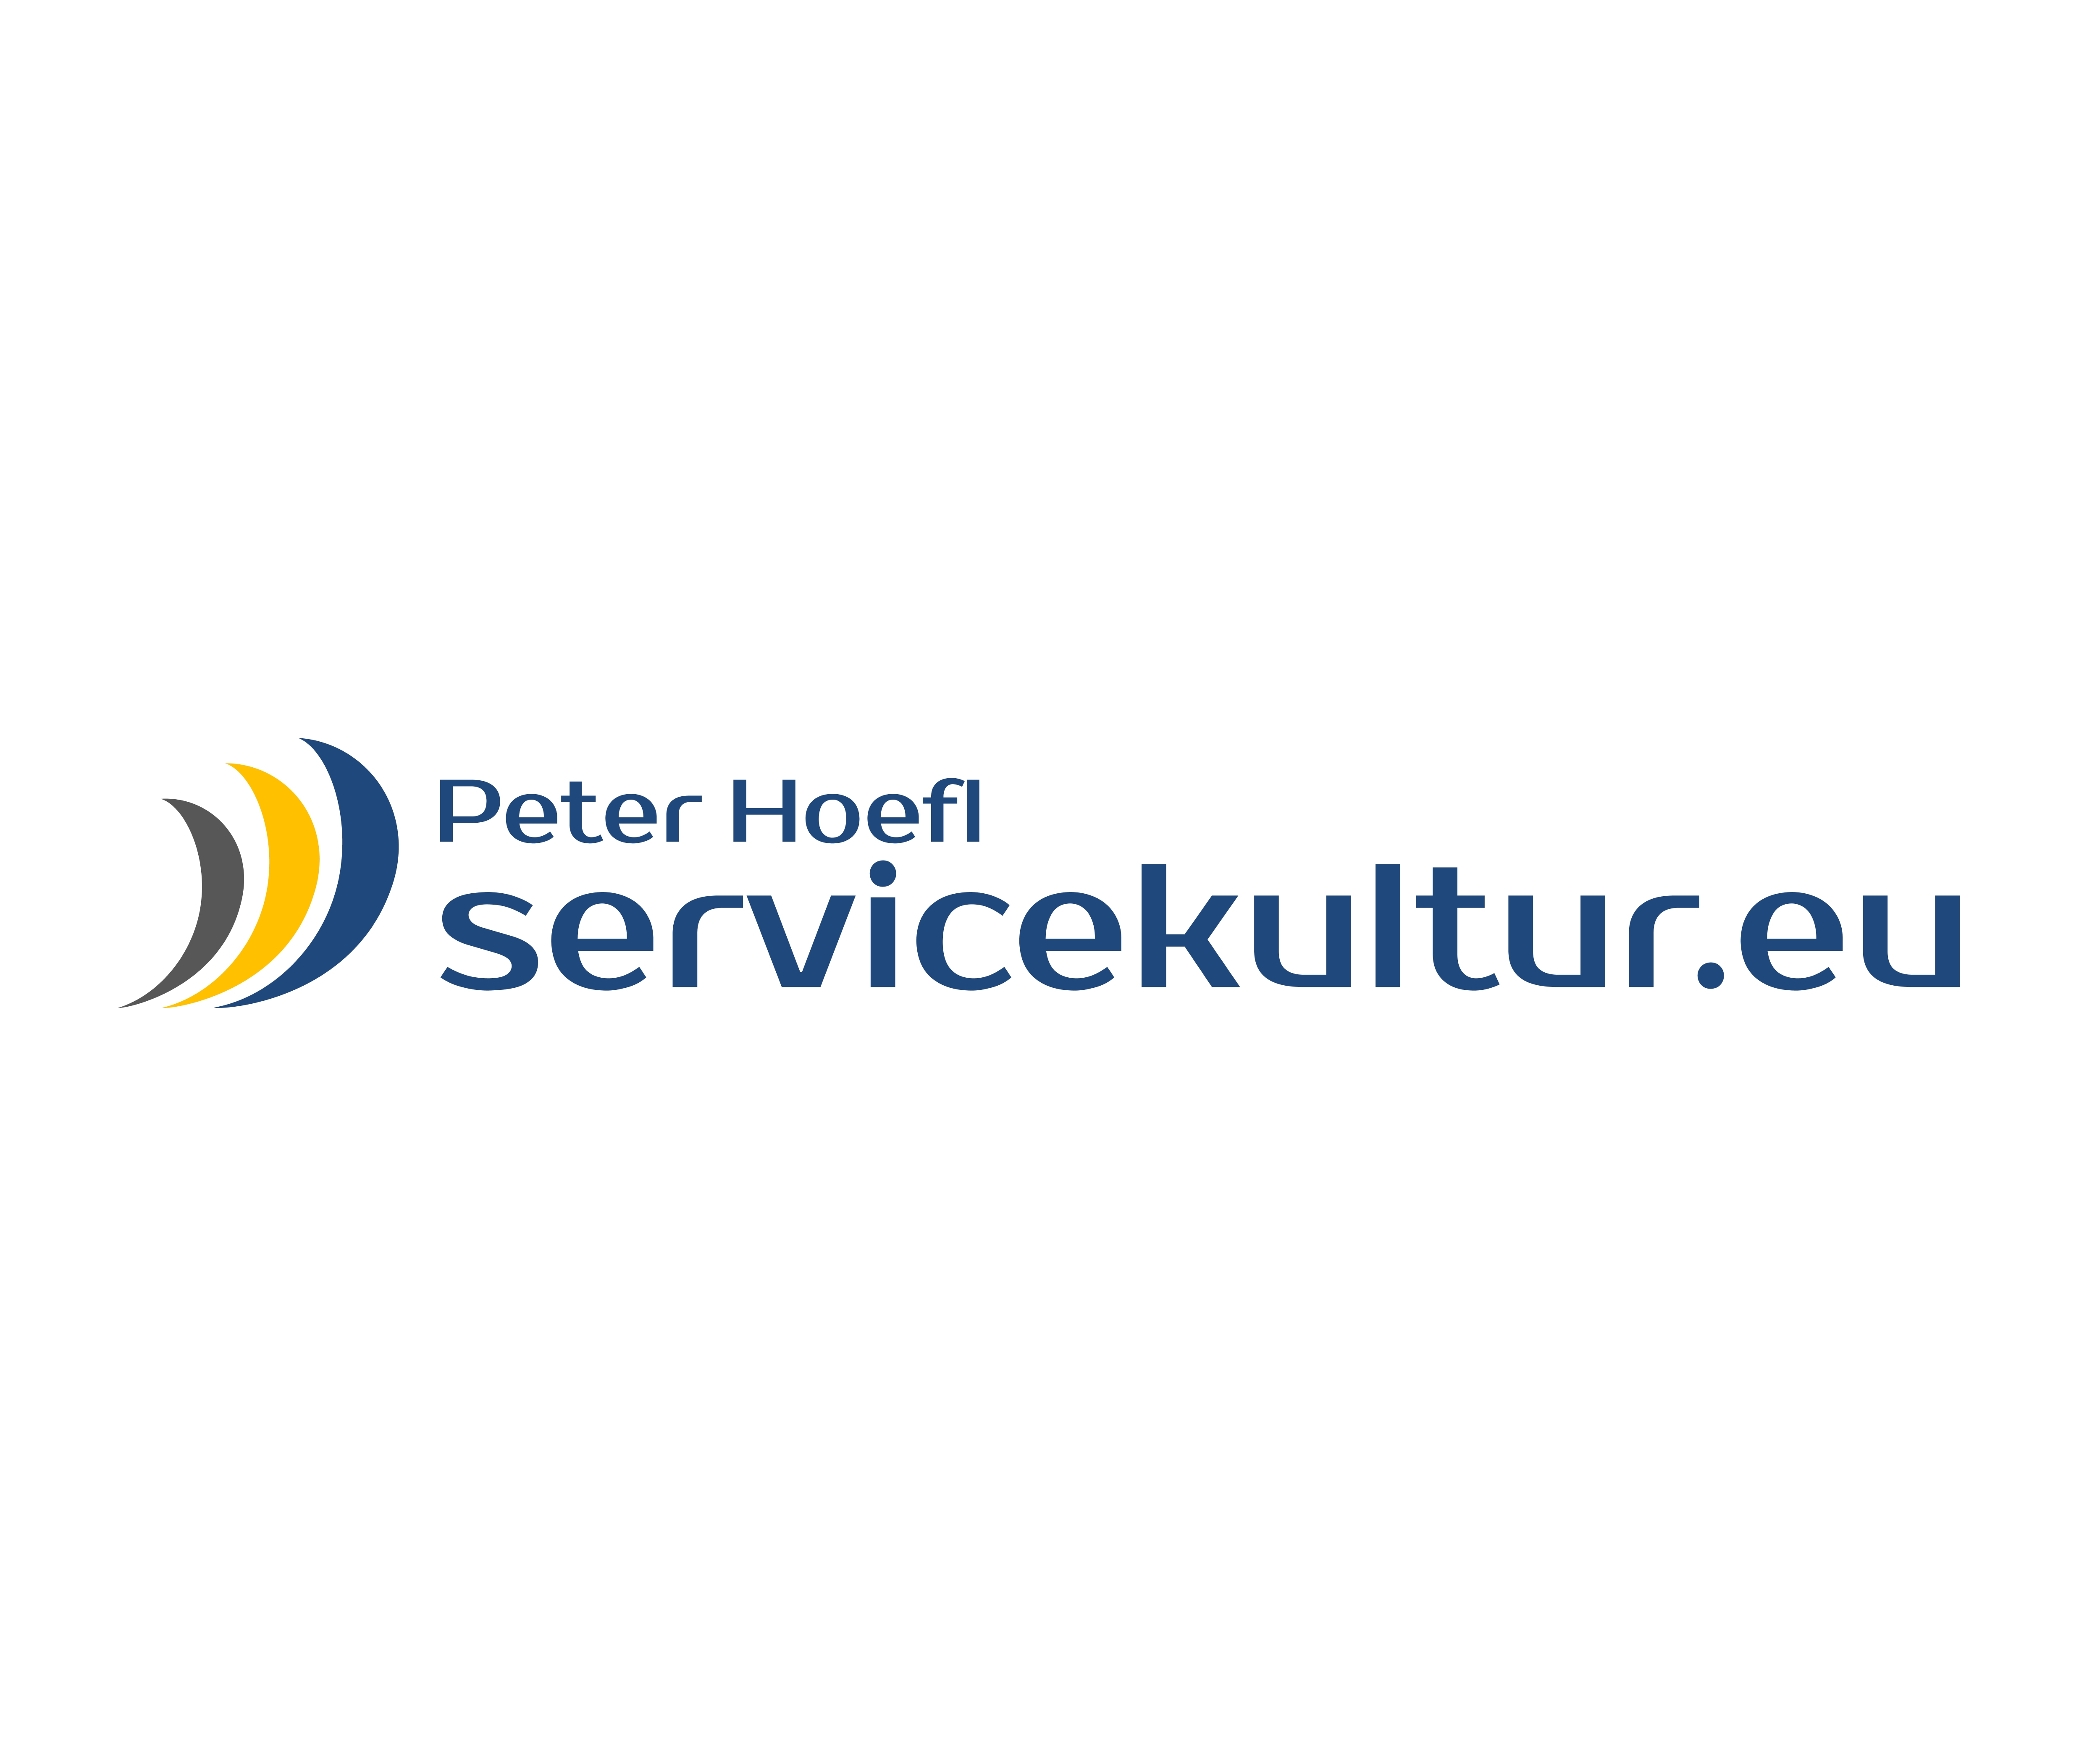 (c) Servicekultur.eu